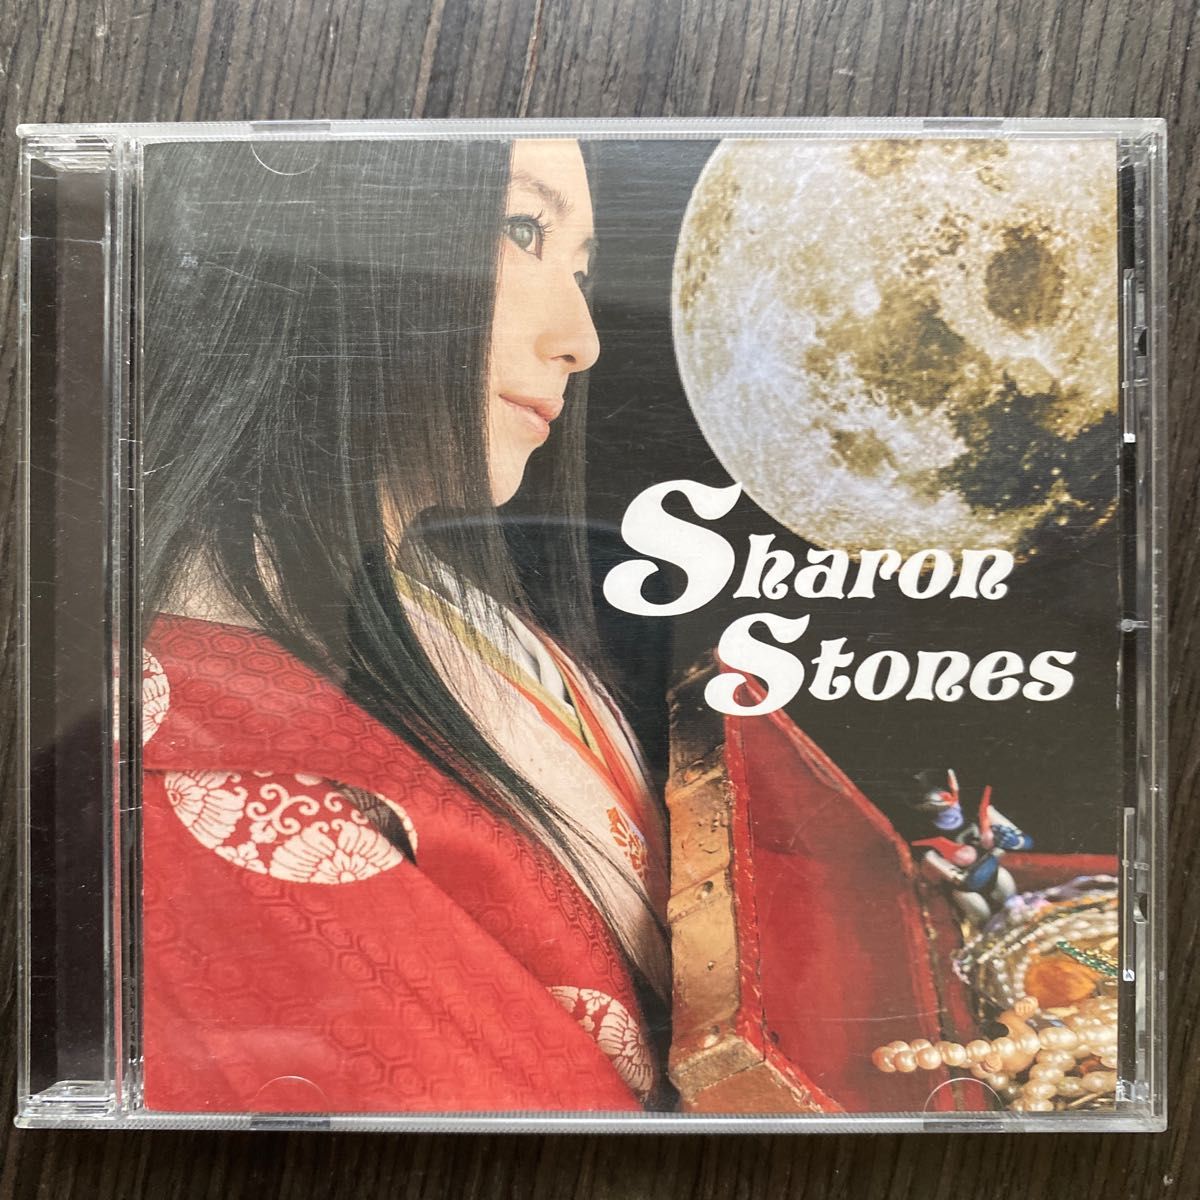  天野月子 Sharon Stones  中古CD